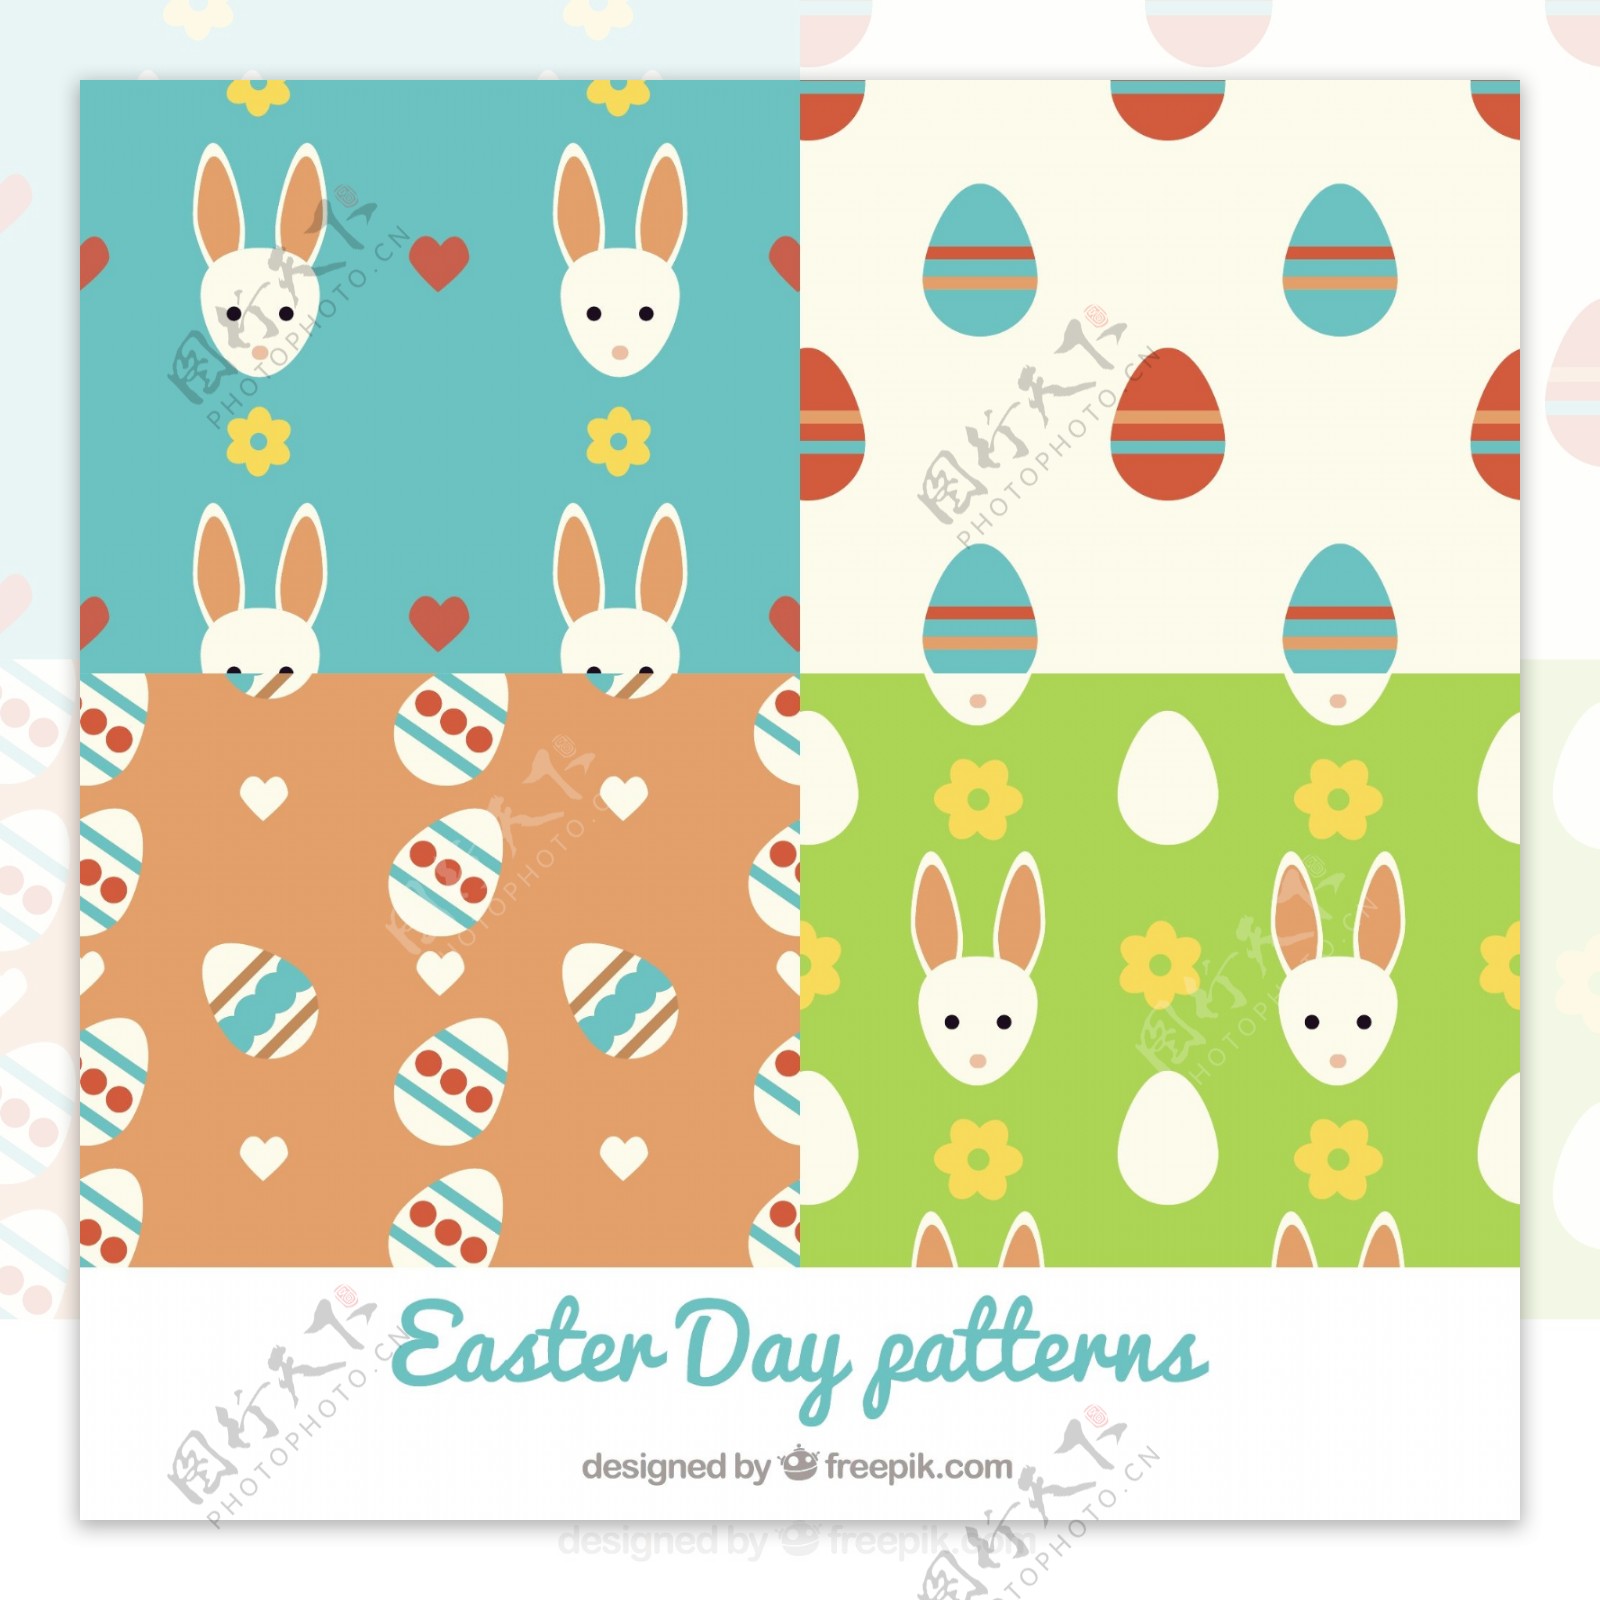 复活节与兔子和鸡蛋在平面设计模式